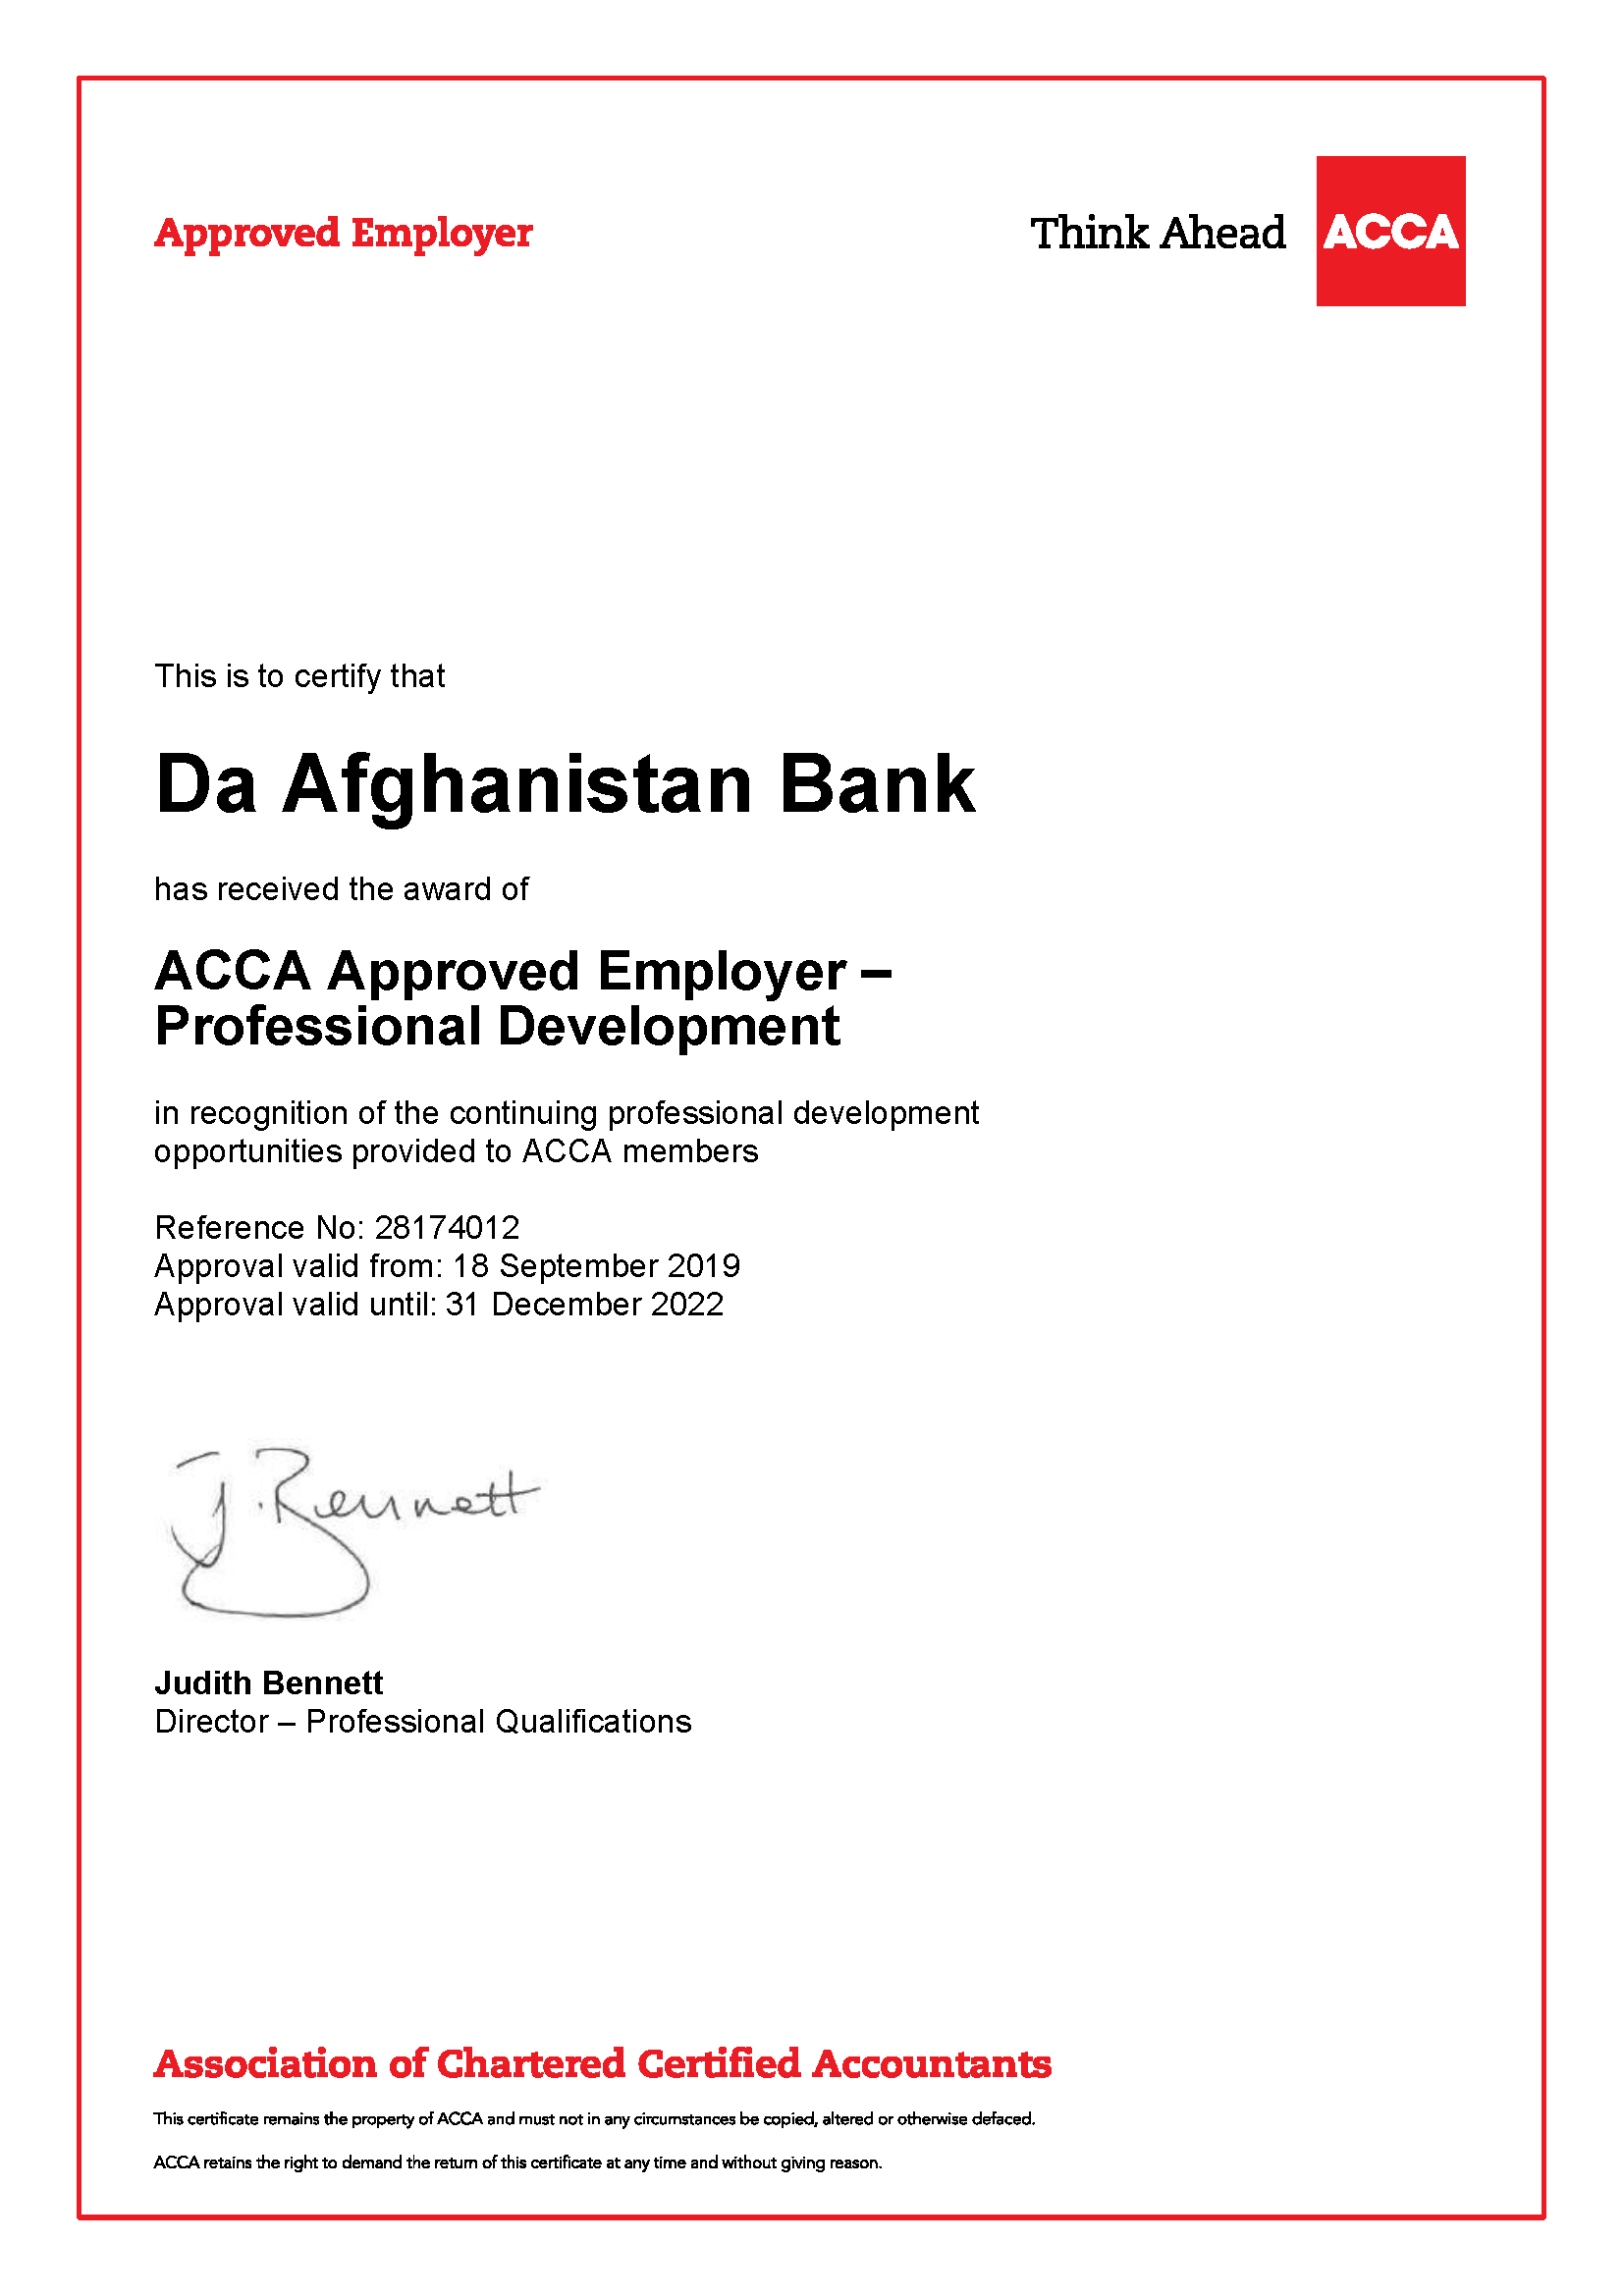 افغانستان بانک د ACCA د کارفرما  په توګه ومنل شو